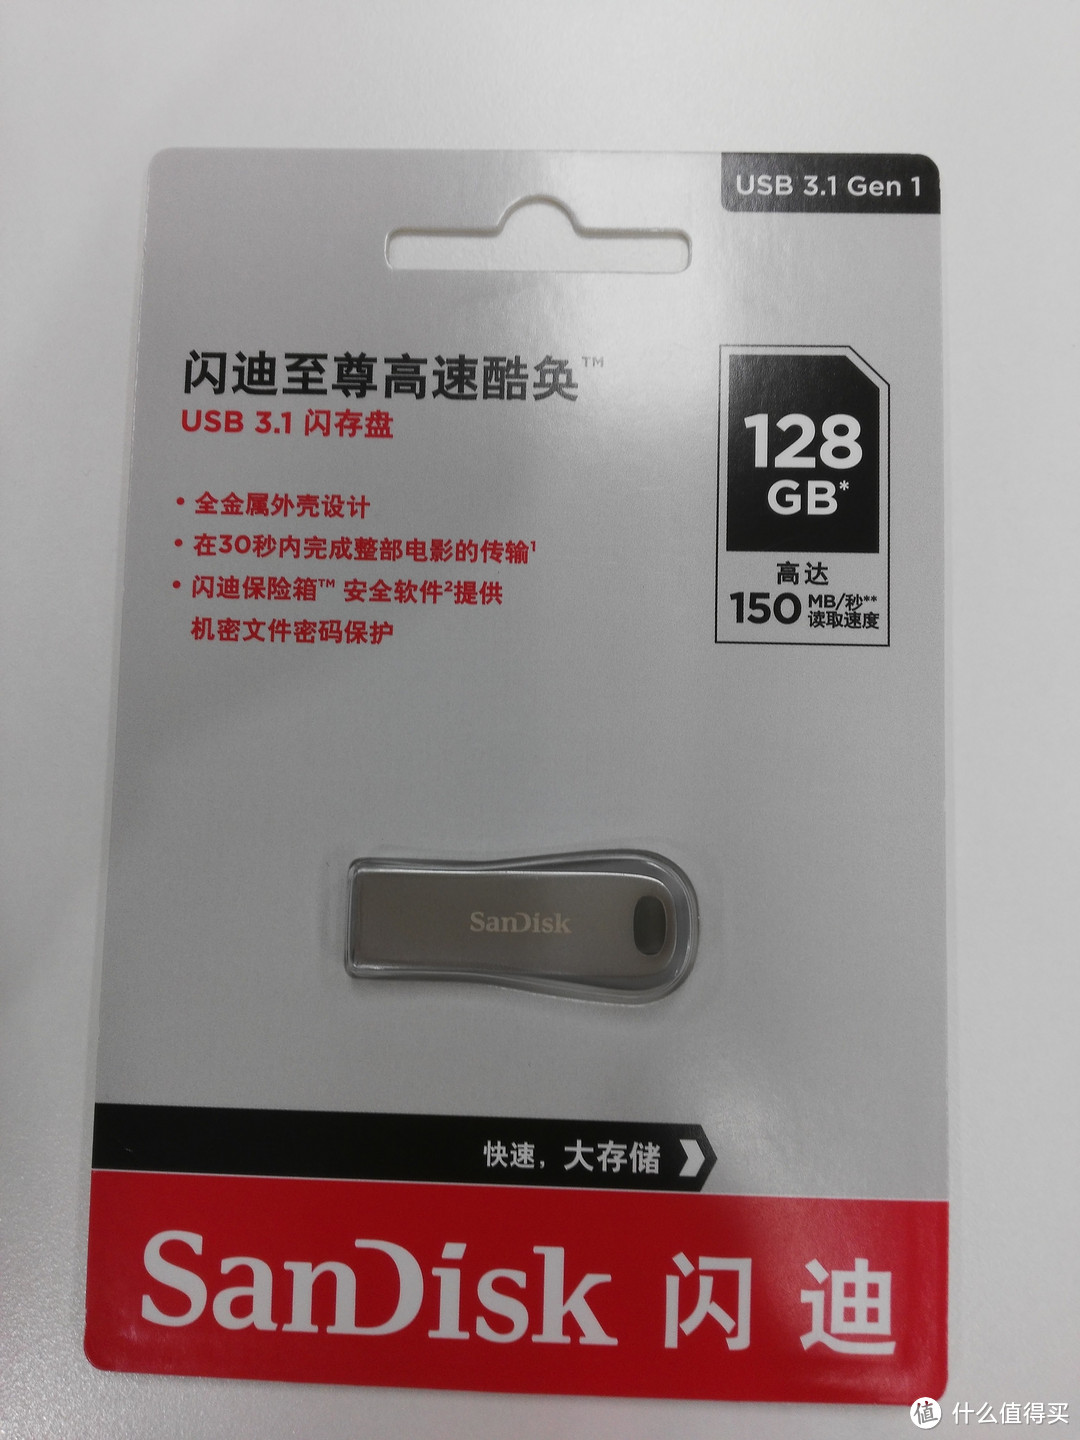 我的随身系统Windows 10 To Go的新家-SanDisk闪迪CZ74至尊高速酷奂USB 3.1闪存U盘128G